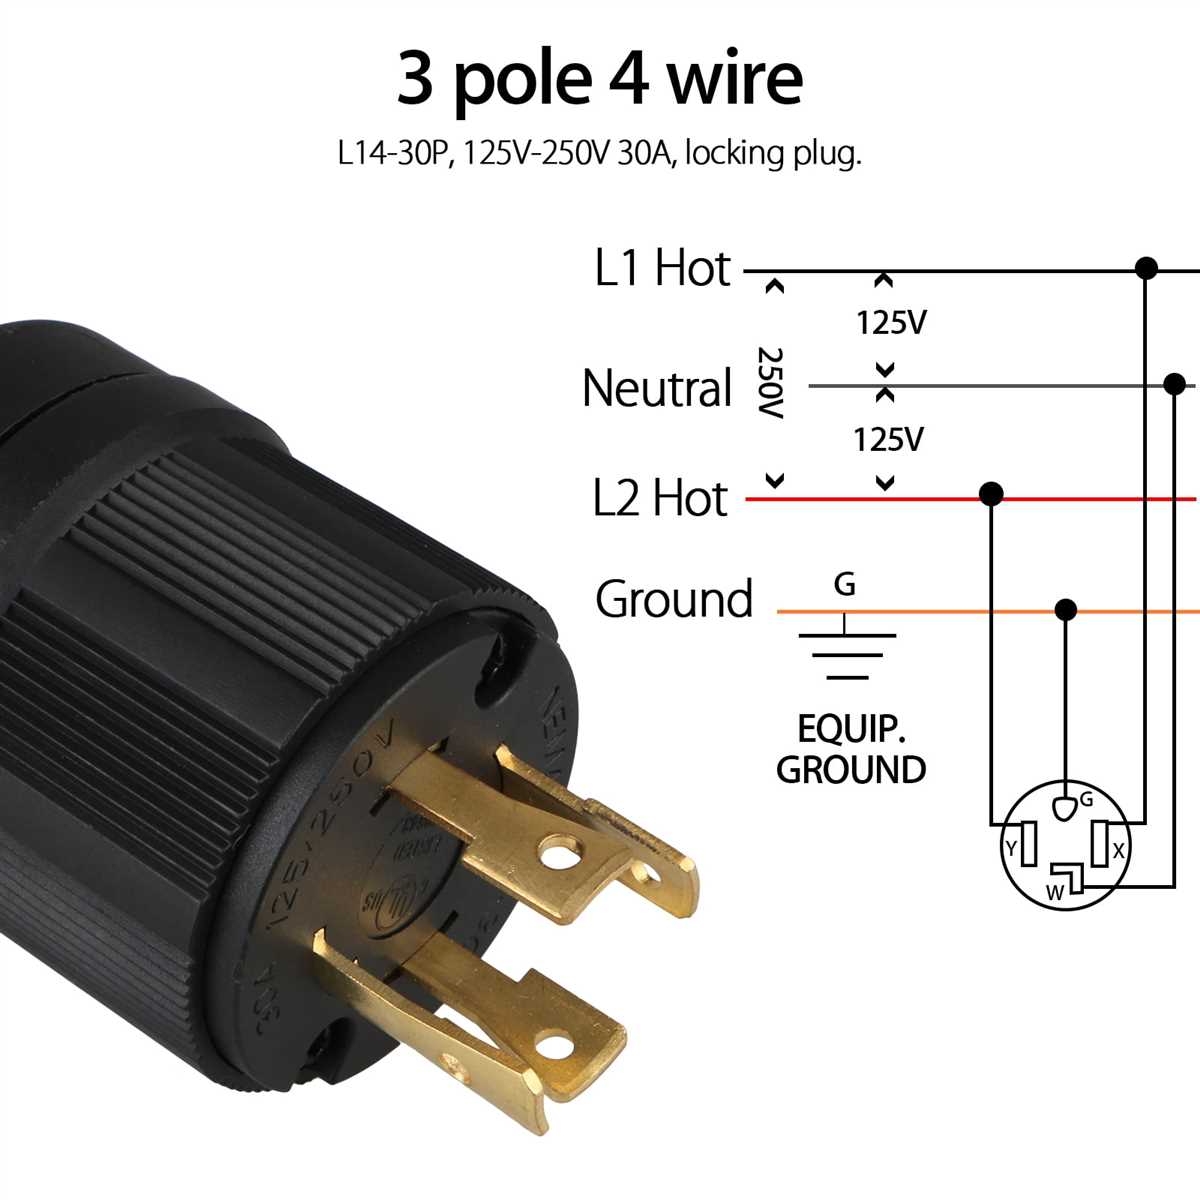 Nema l14-20p wiring diagram